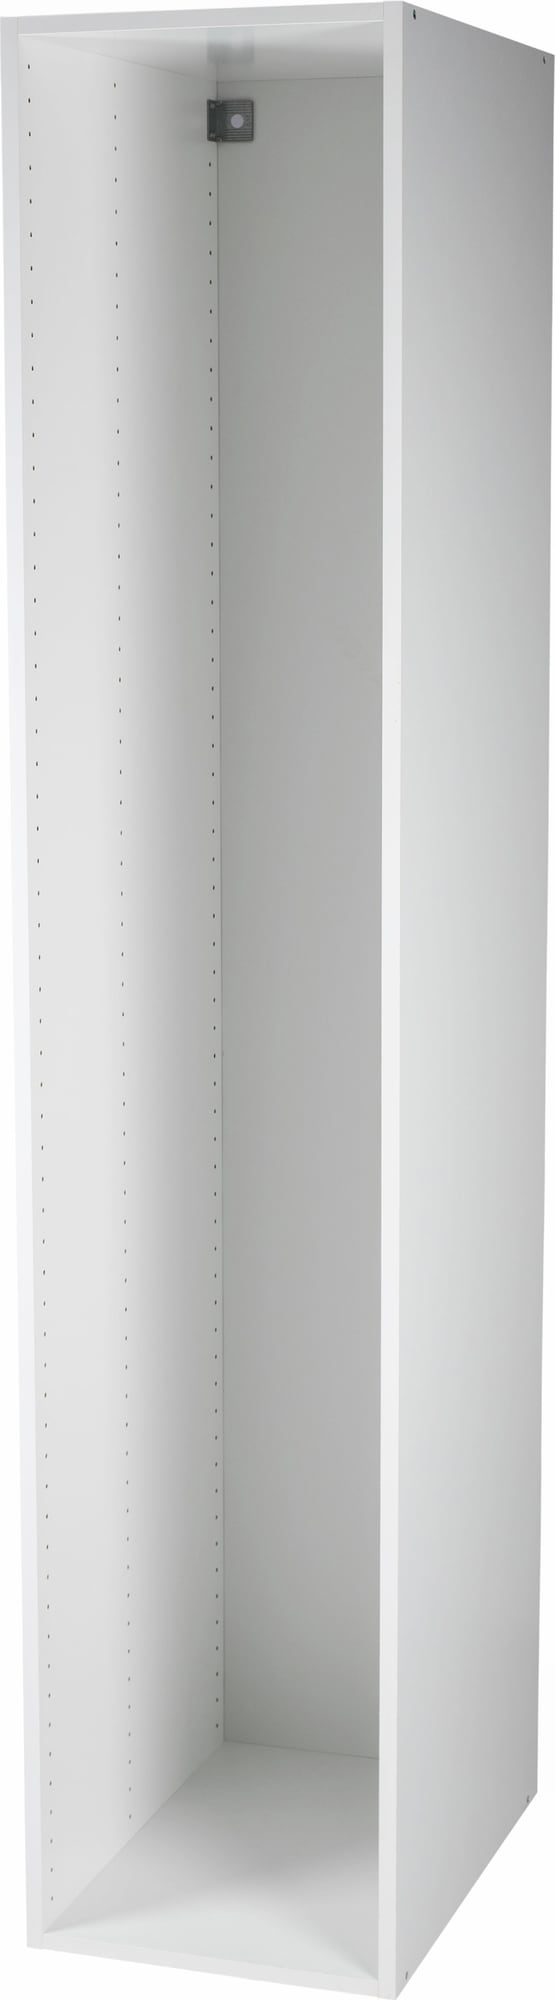 Epoq korkea kaappi 40x217 (valkoinen) - Gigantti verkkokauppa